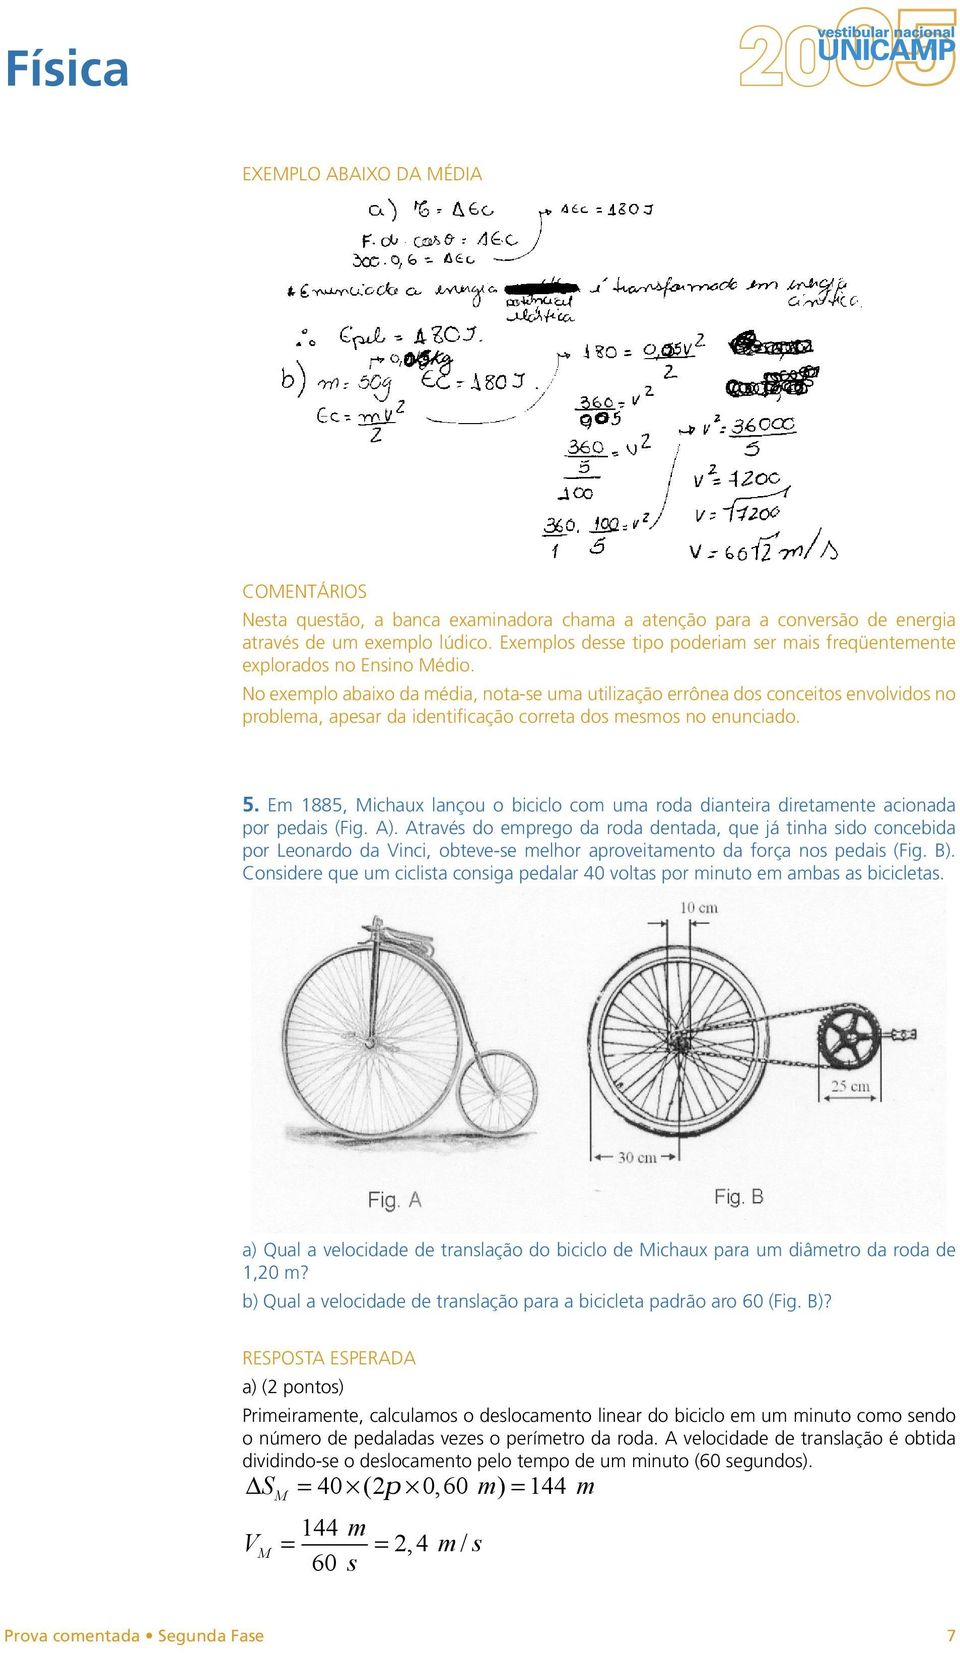 Em 1885, Michaux lançou o biciclo com uma roda dianteira diretamente acionada por pedais (Fig. A).